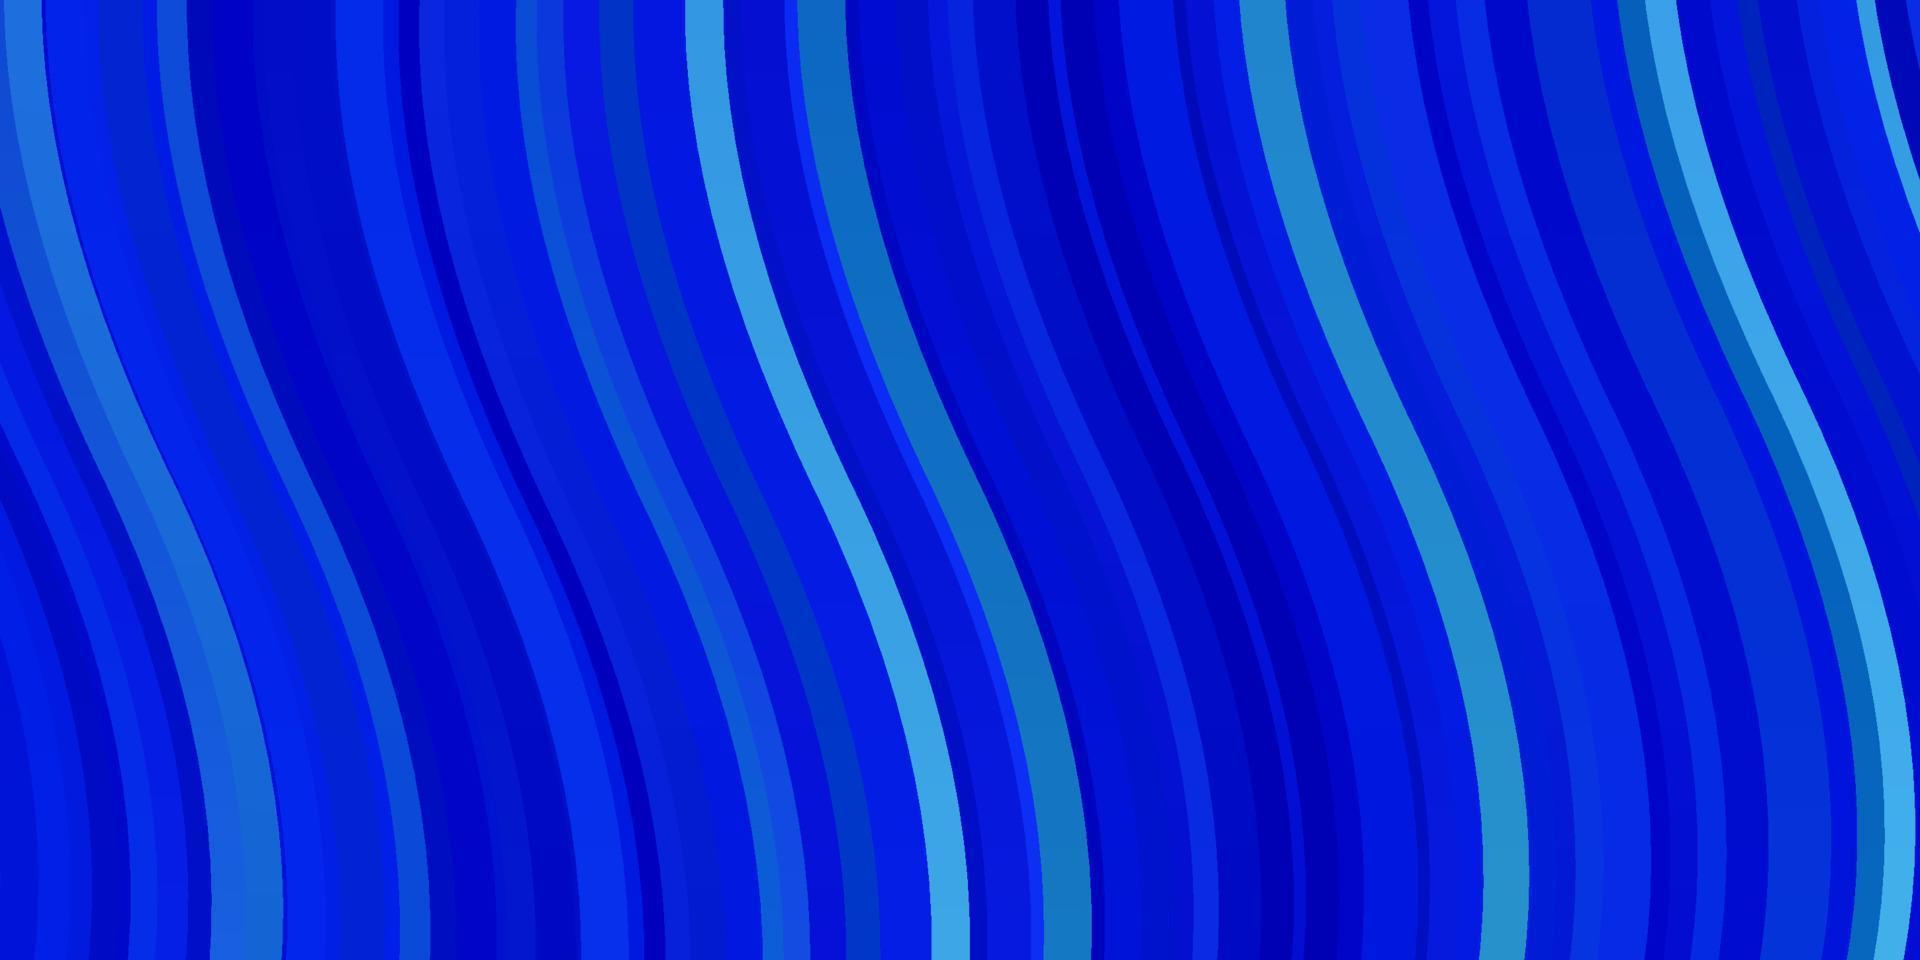 pano de fundo azul claro do vetor com linhas dobradas.